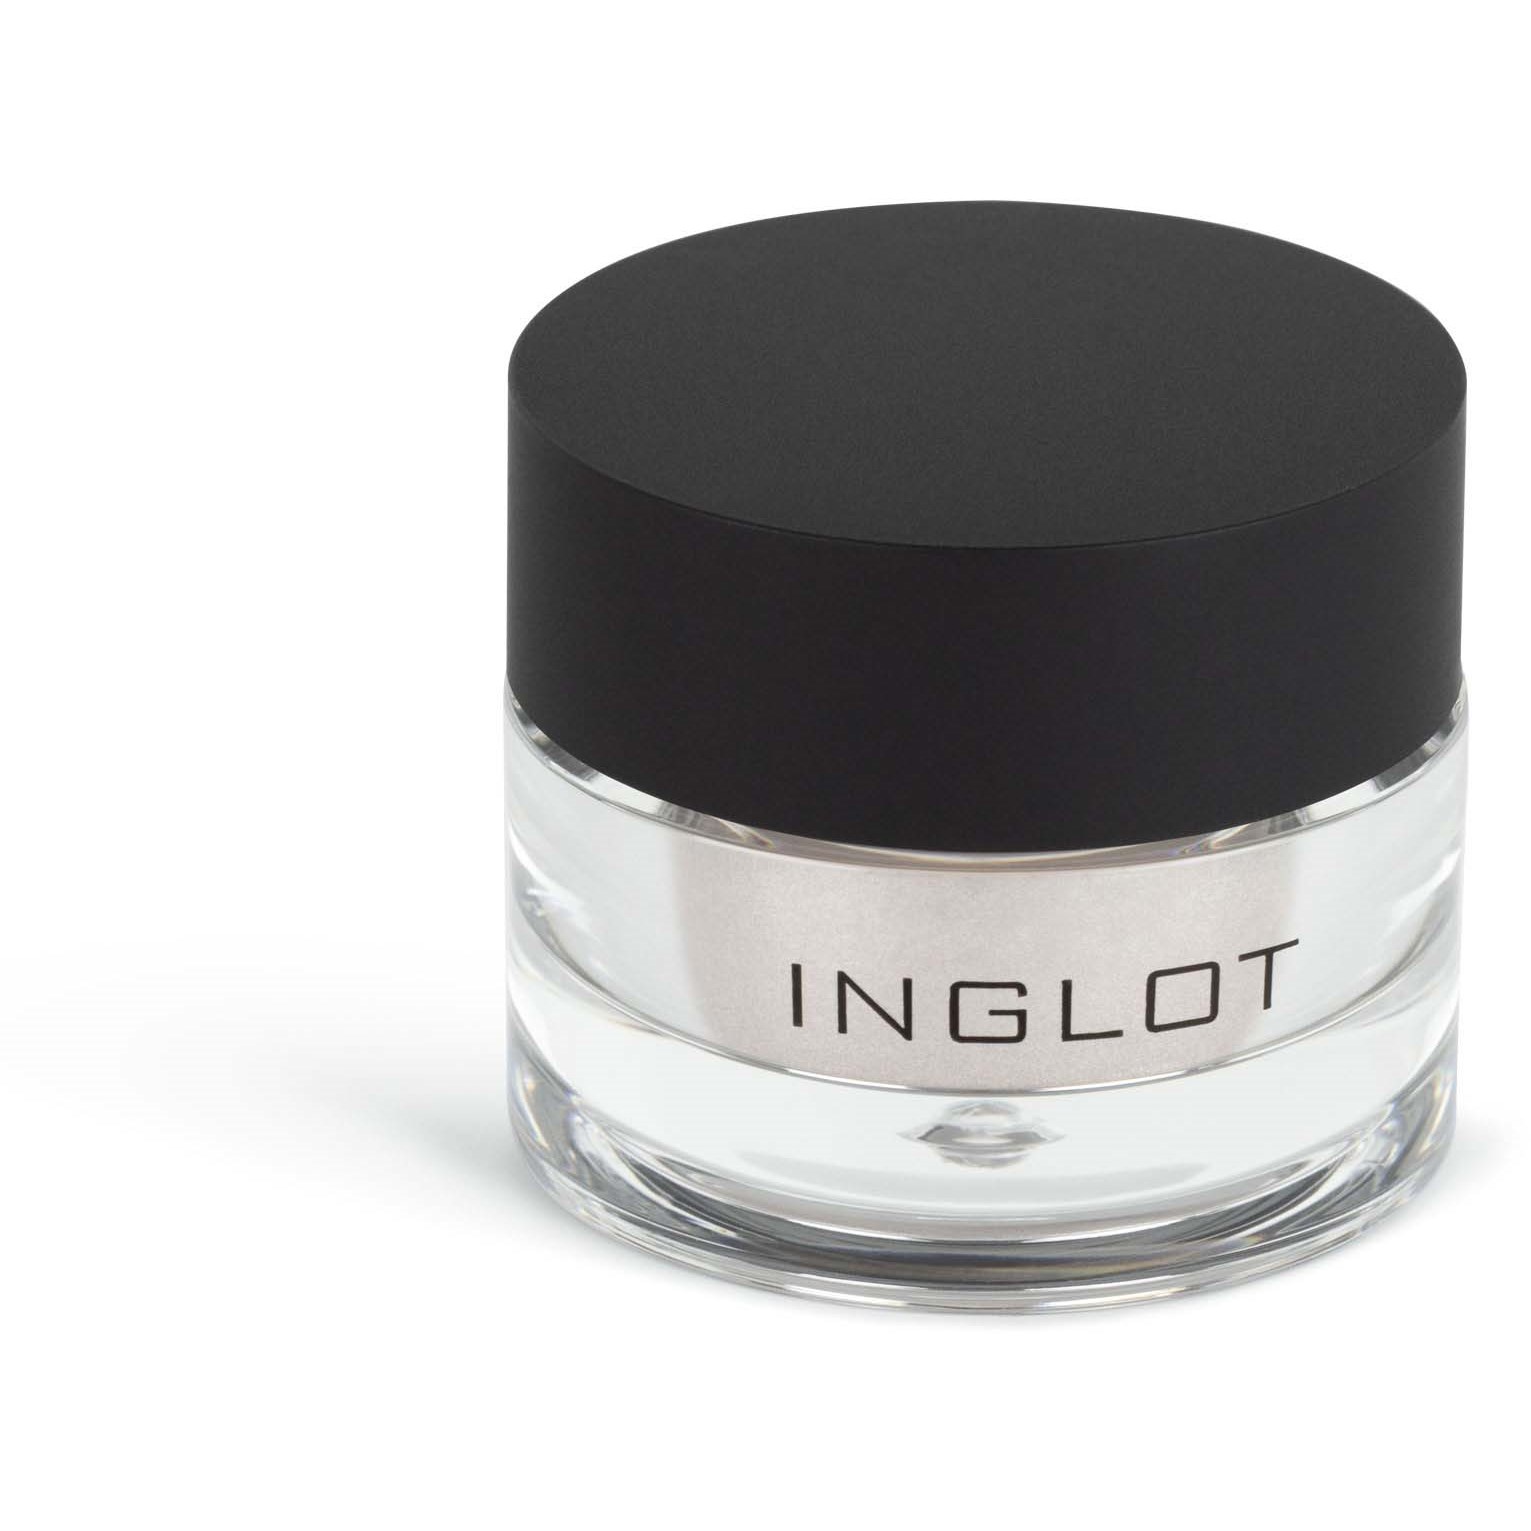 Inglot Eye & Body Powder Pigment 3